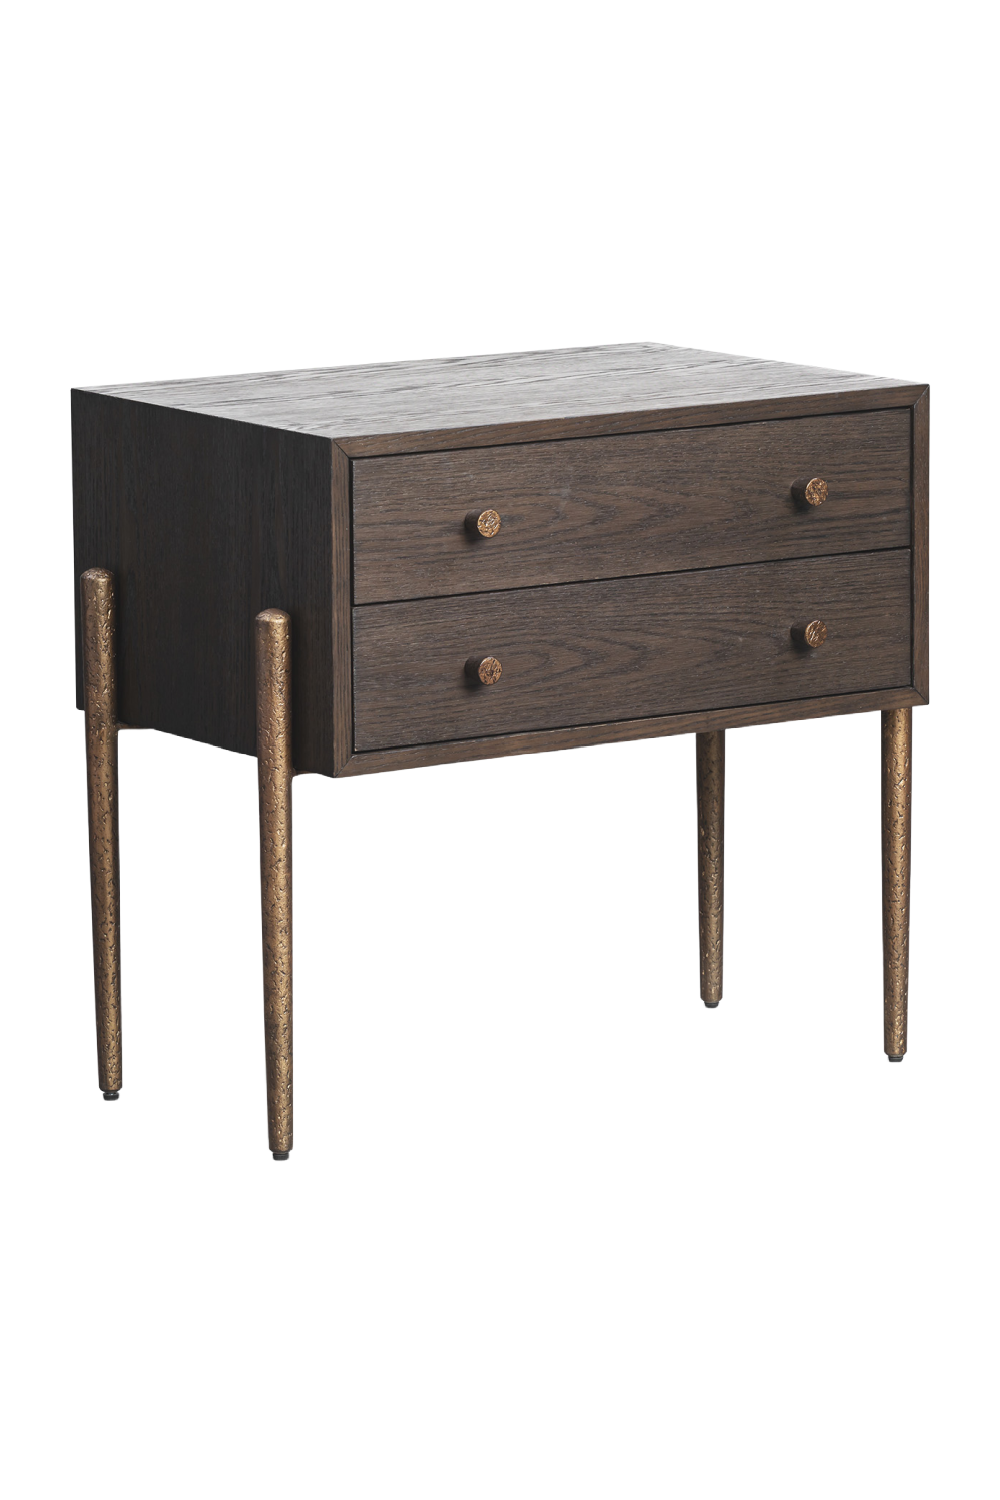 Oak 2-Drawer Bedside Table | Liang & Eimil Nella | Oroa.com